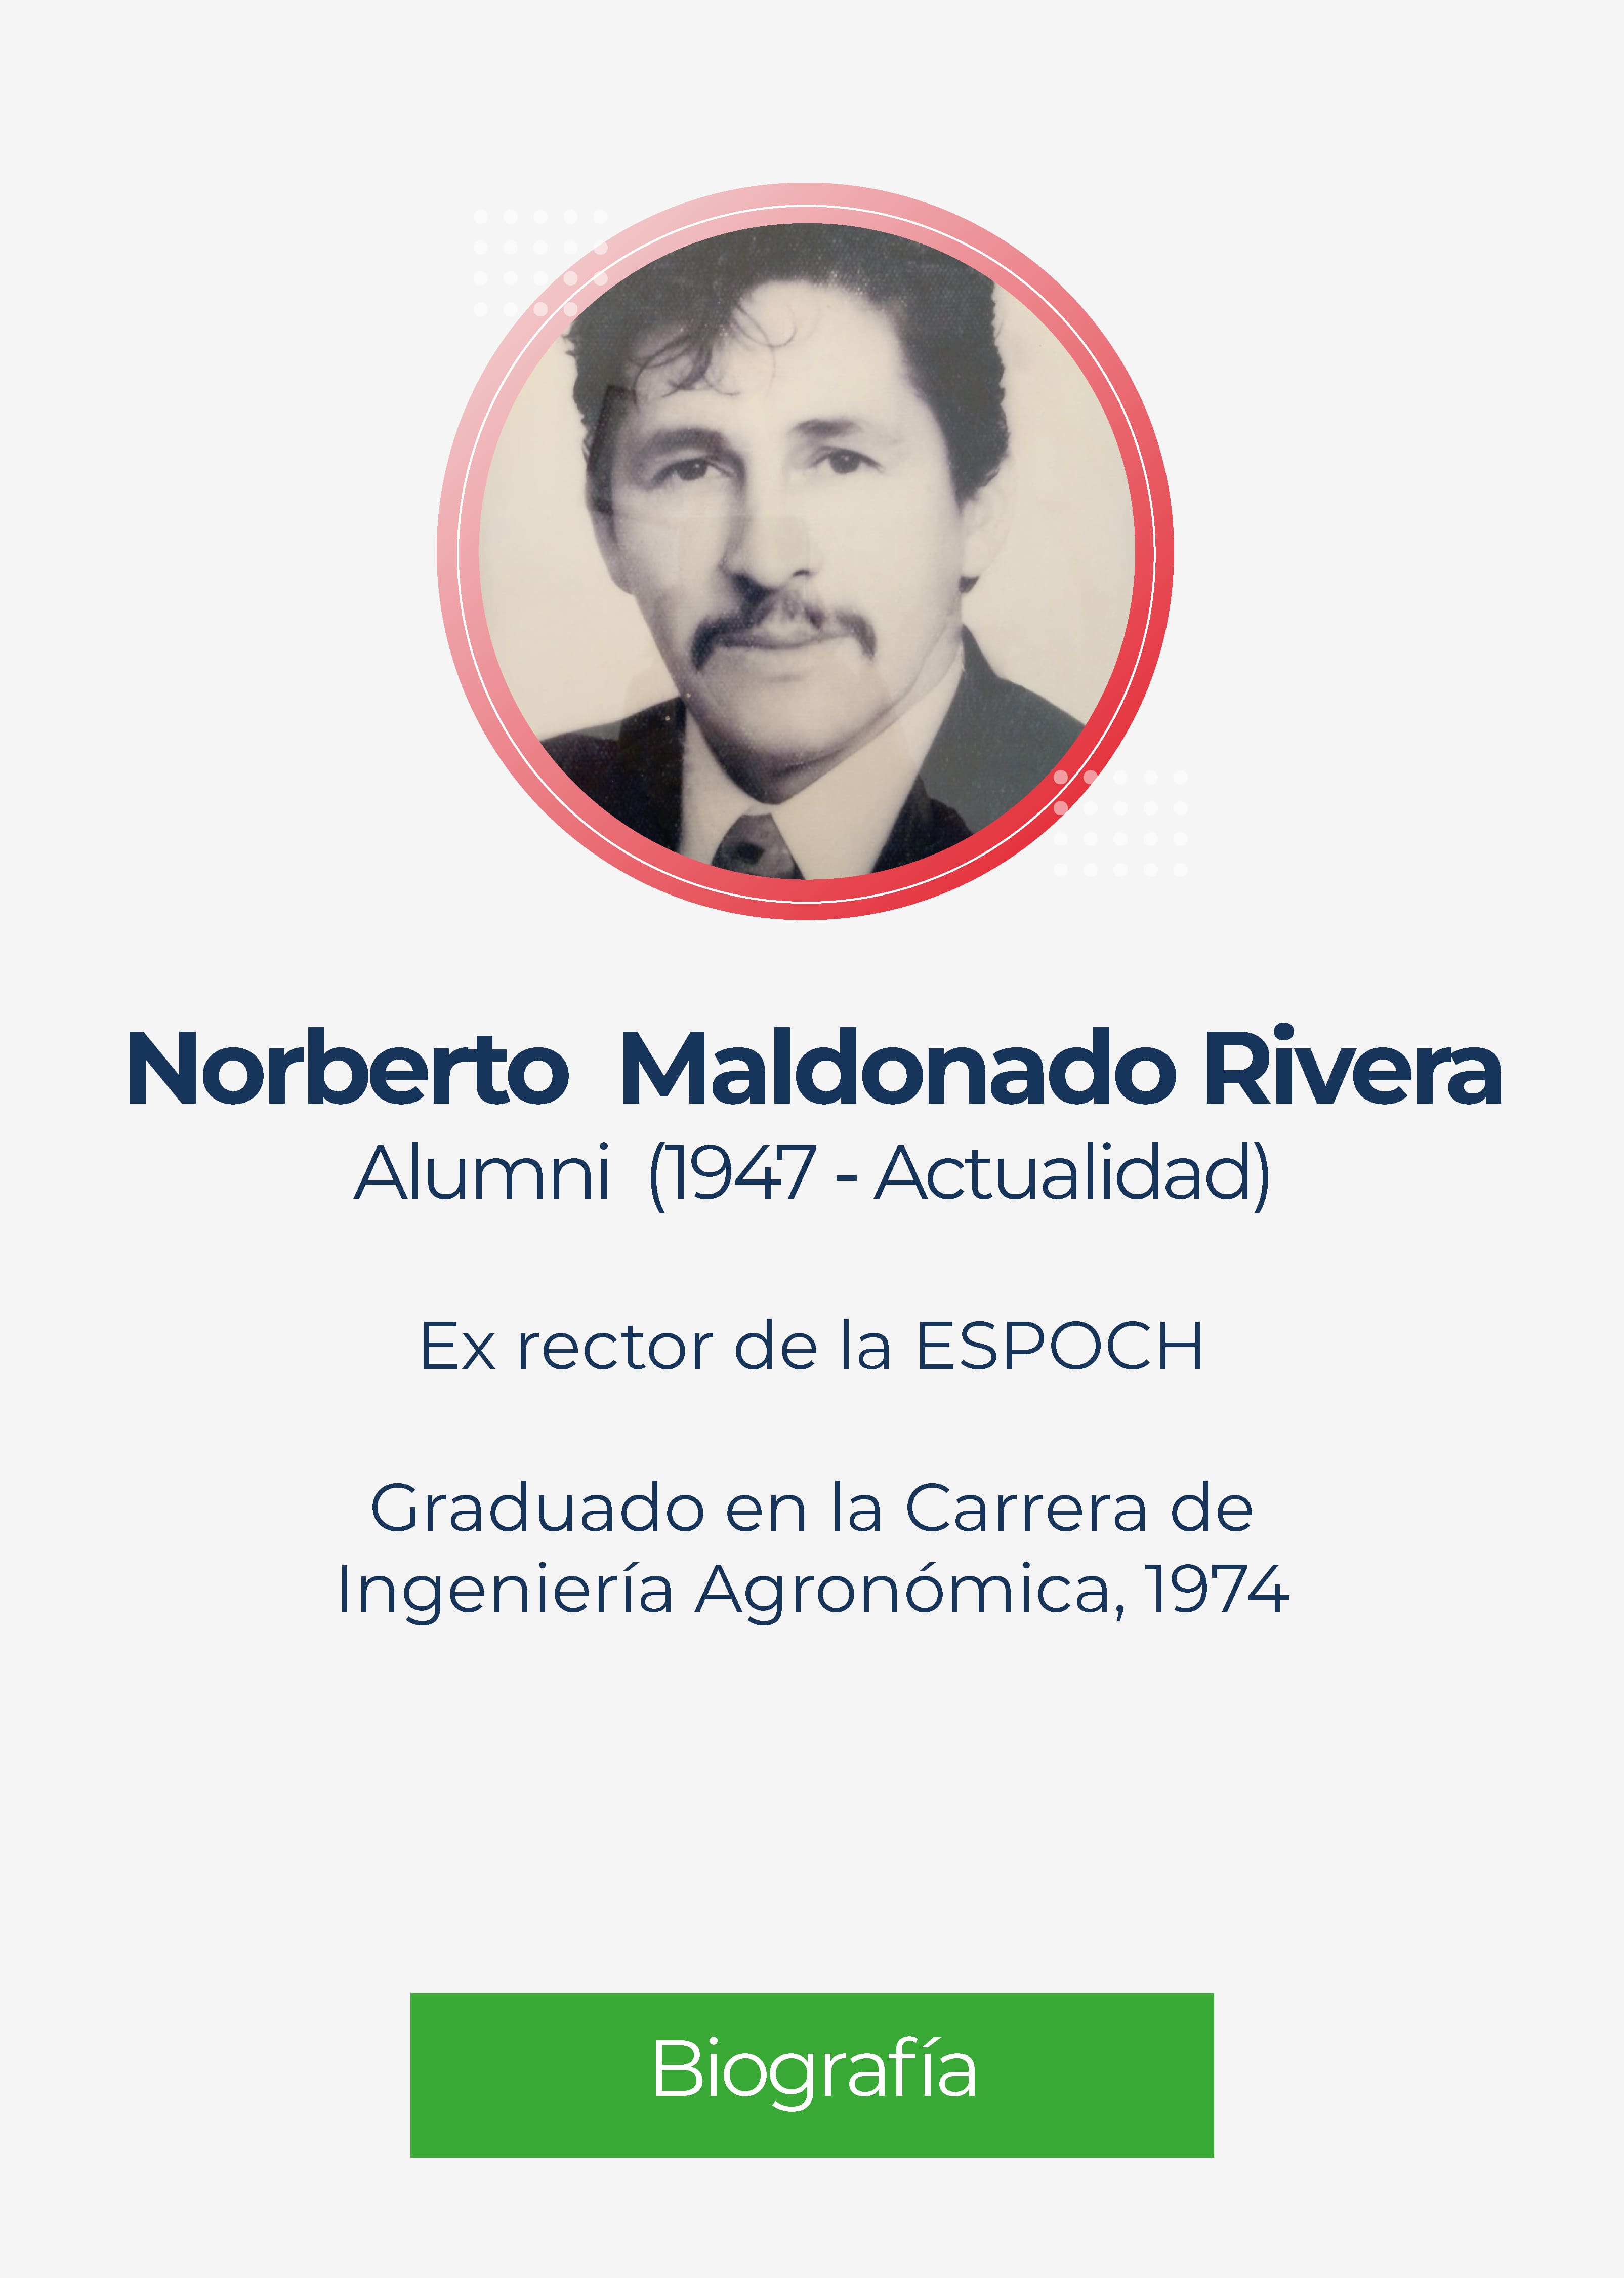 Alejandro Norberto Maldonado Rivera